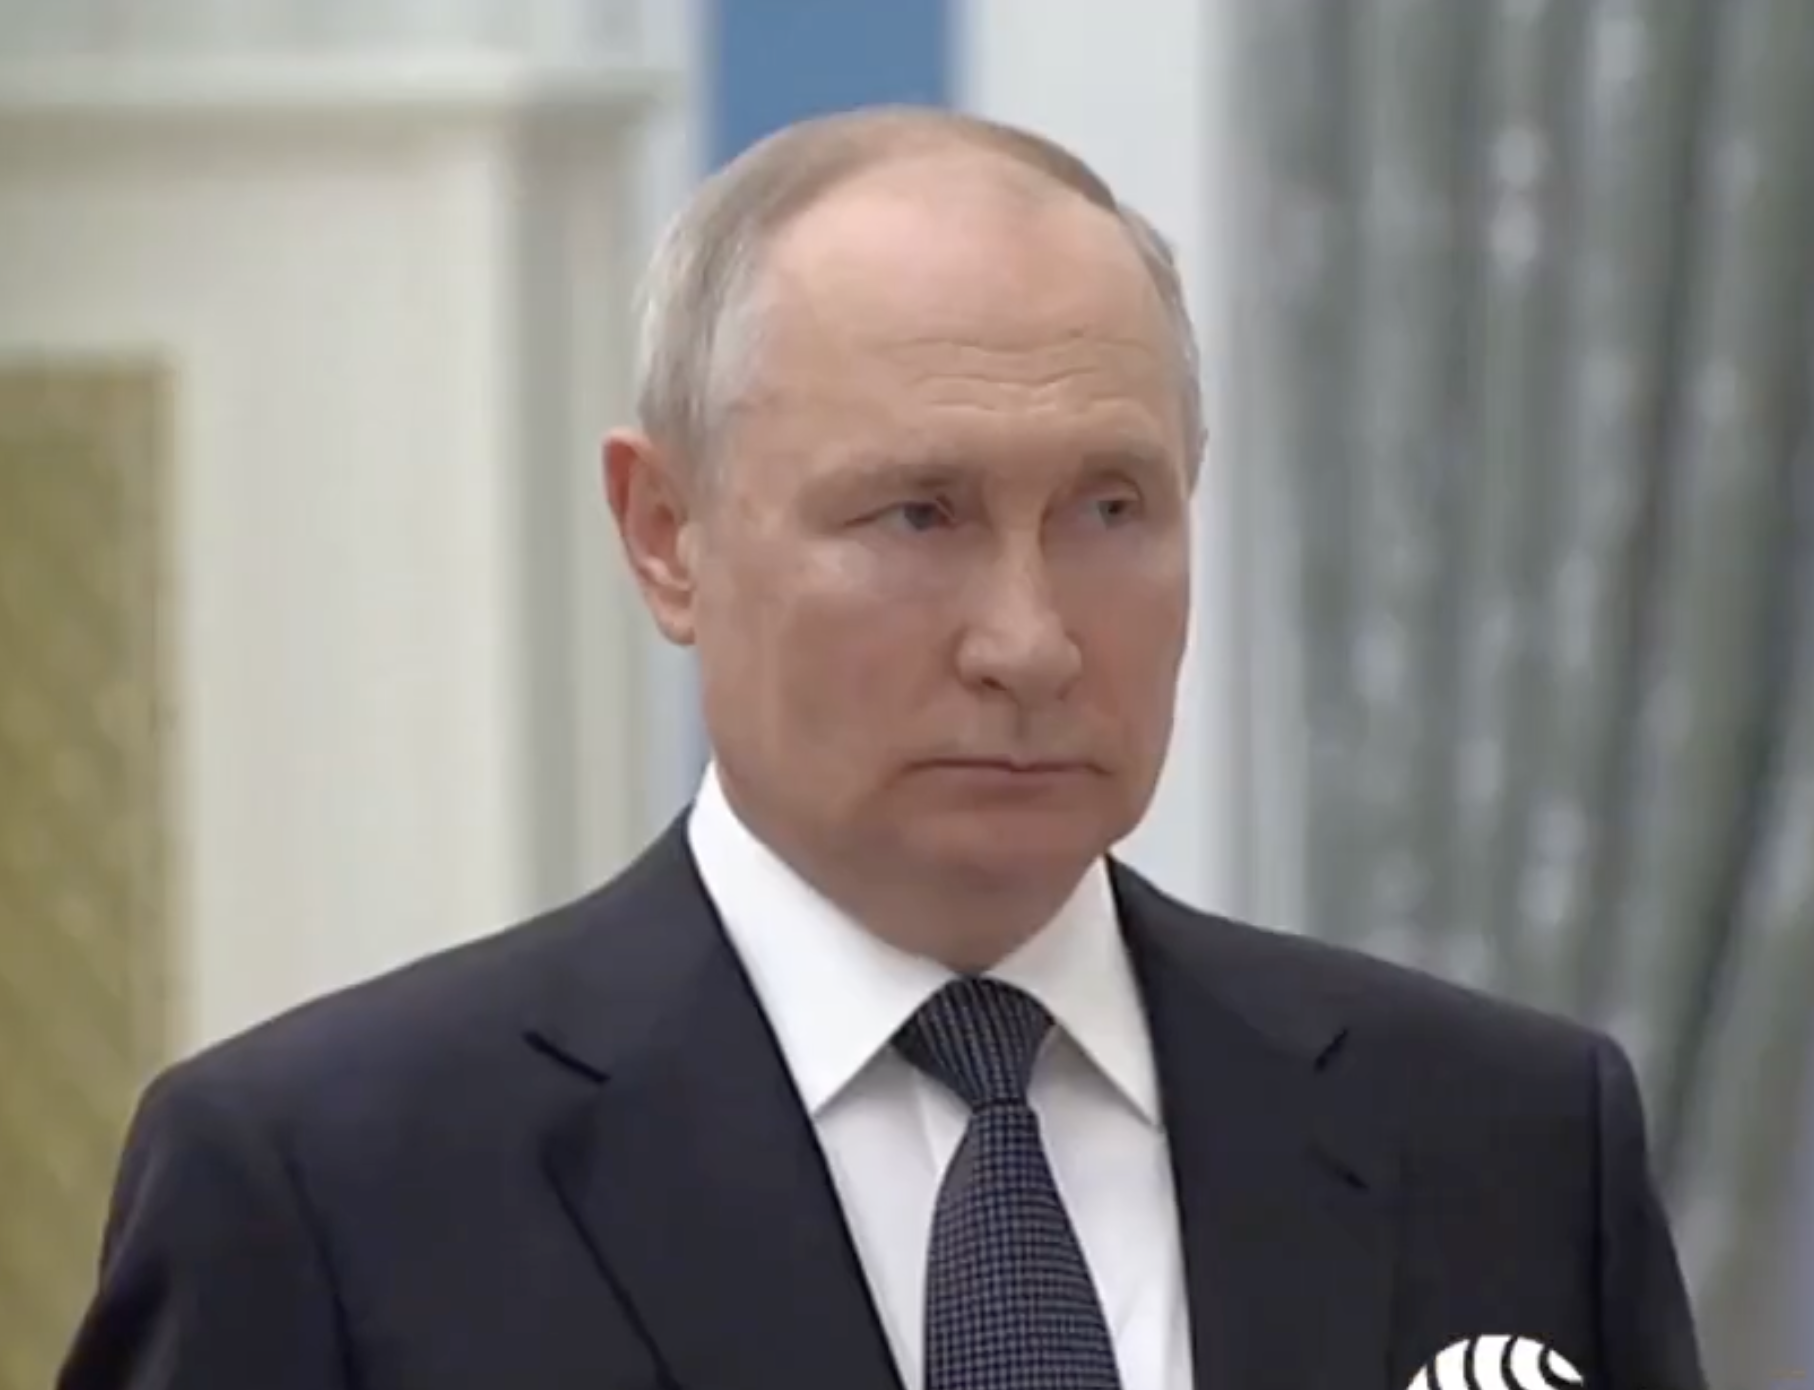 "Он еще жив?"  Винокур эпично опозорился, пытаясь расхвалить Путина, и стал посмешищем. Видео